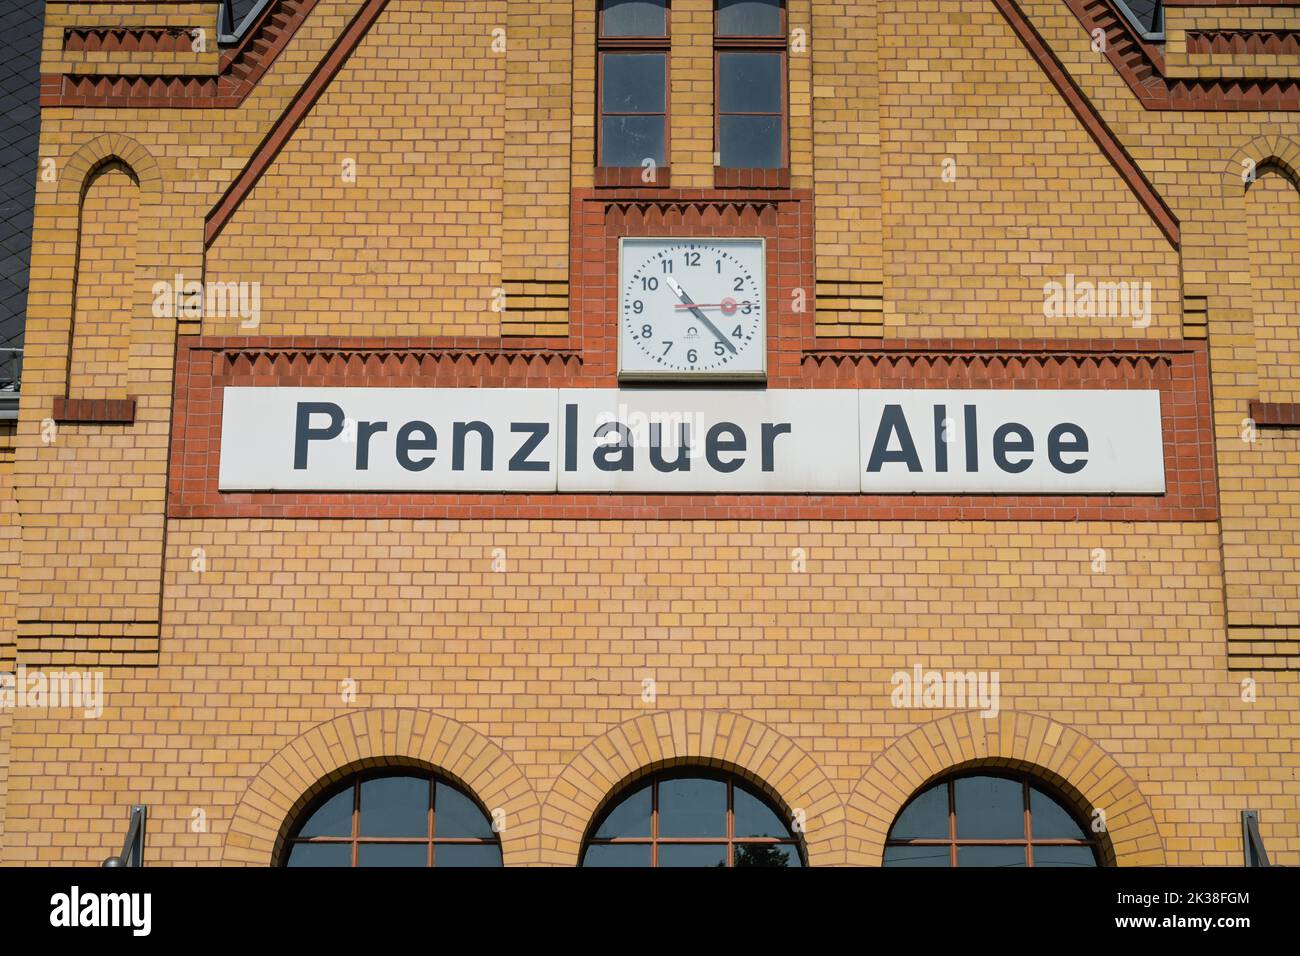 S-Bahnhof, Prenzlauer Allee, Prenzlauer Berg, Pankow, Berlin, Deutschland Stock Photo